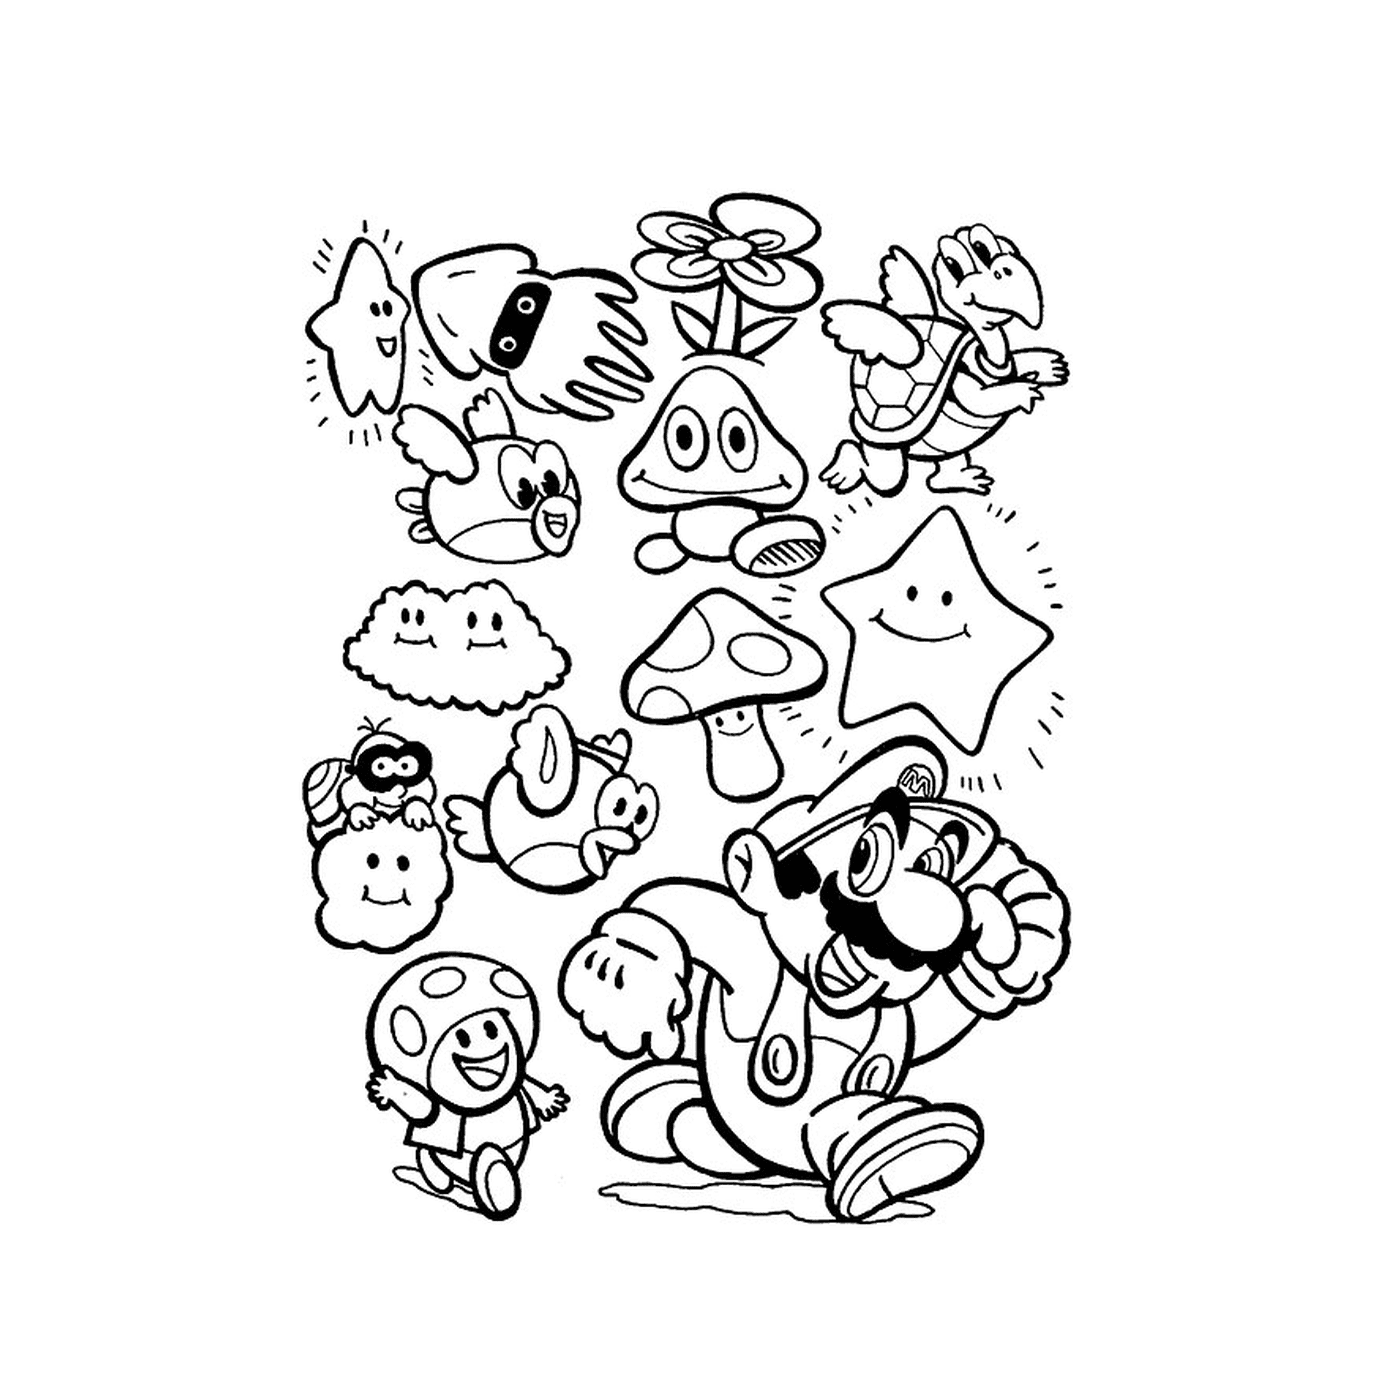   Un groupe de personnages de dessin animé dessinés ensemble 